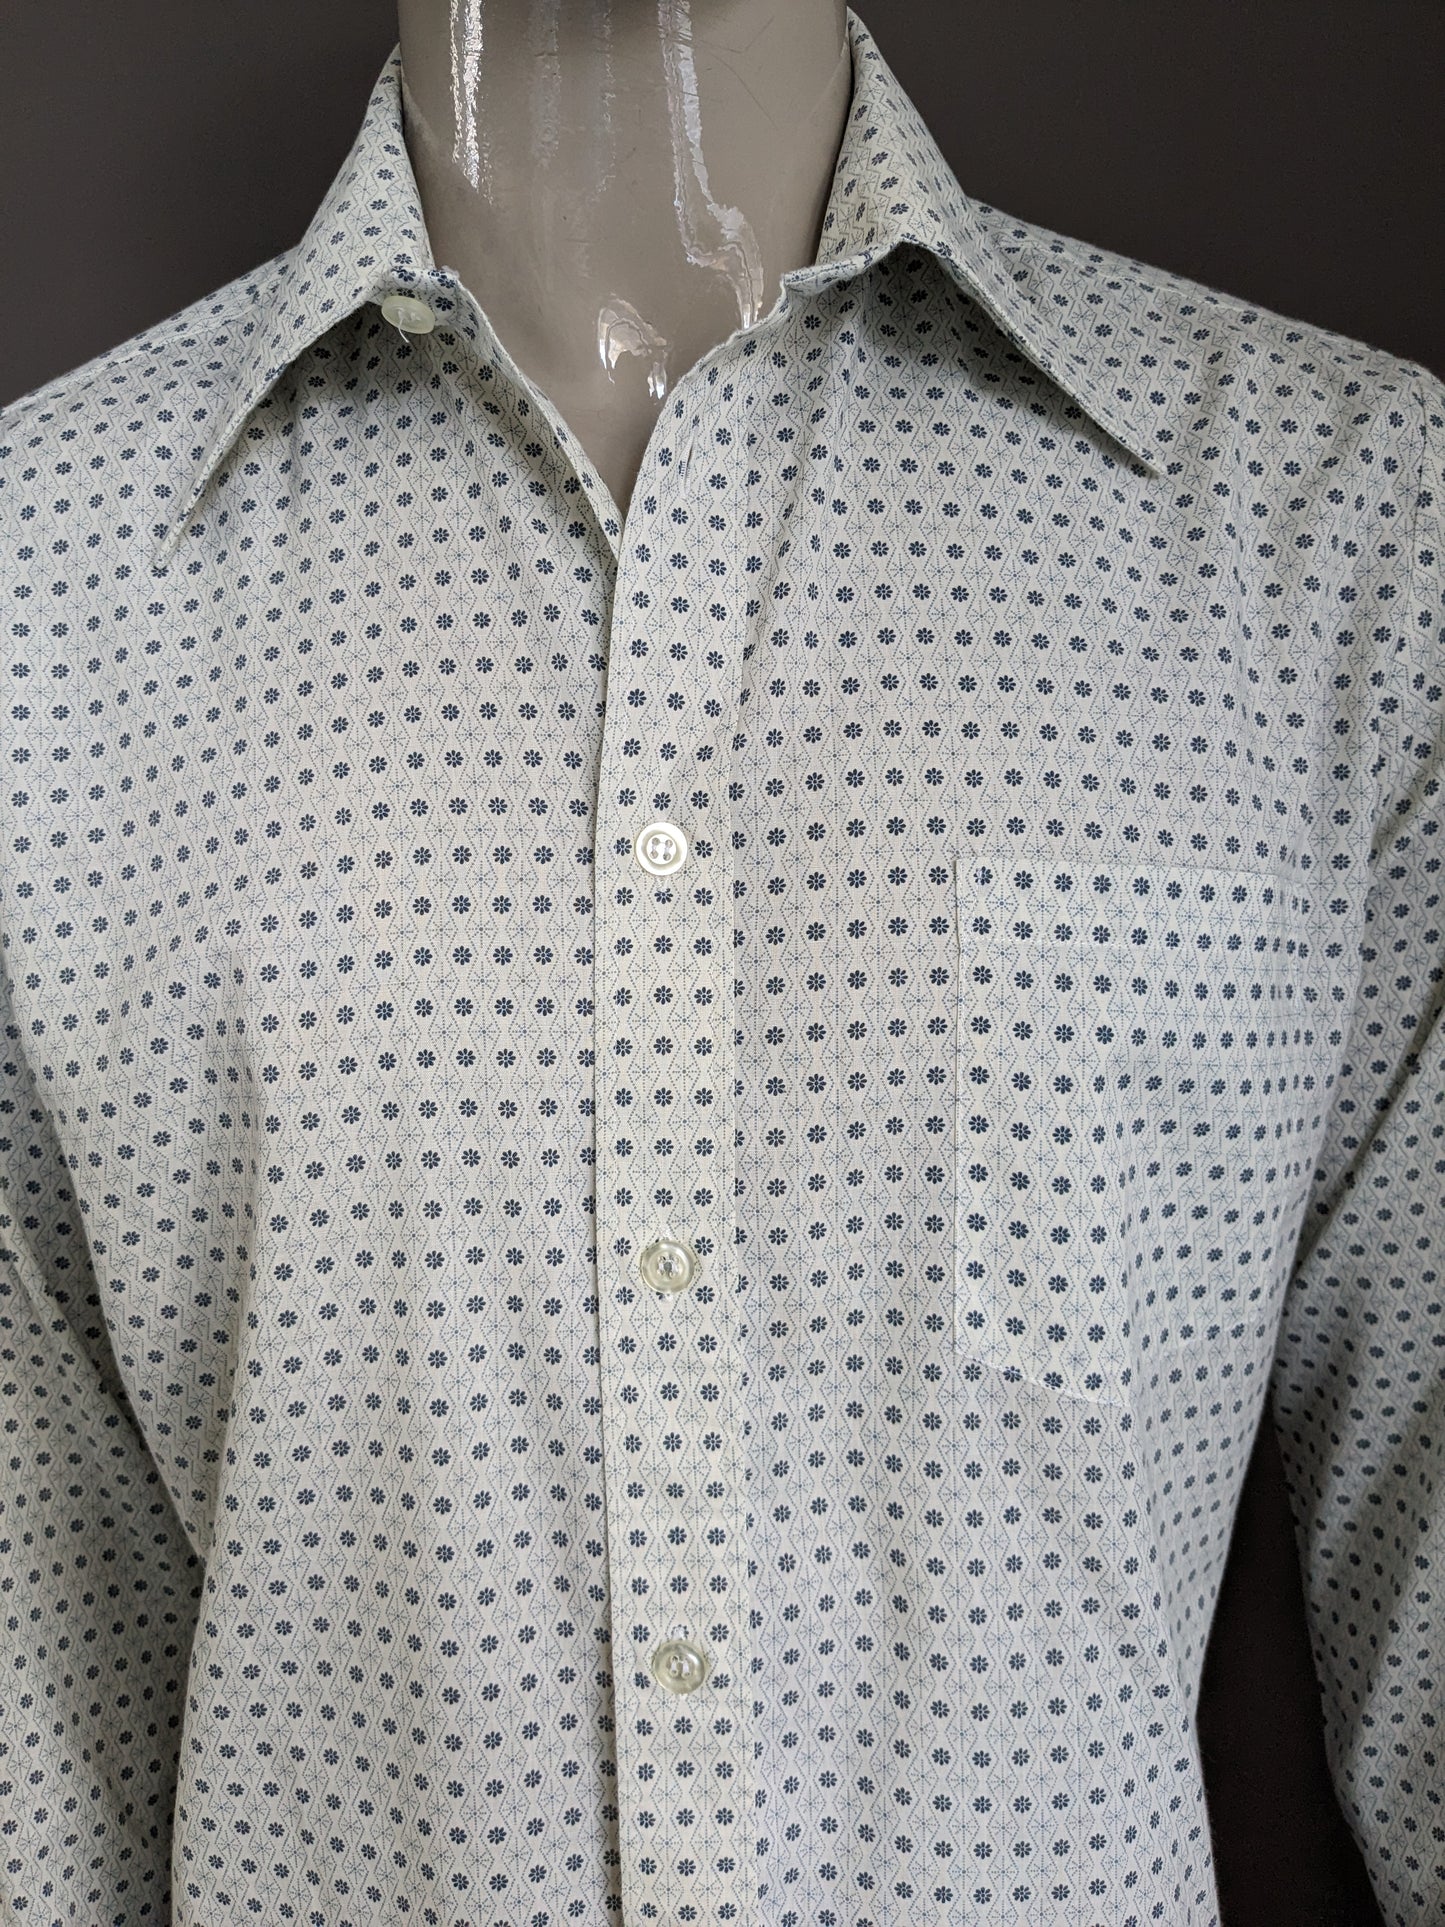 Camisa Vintage Fabio 70 con cuello de punto. Beige gris floral. Tamaño xl.